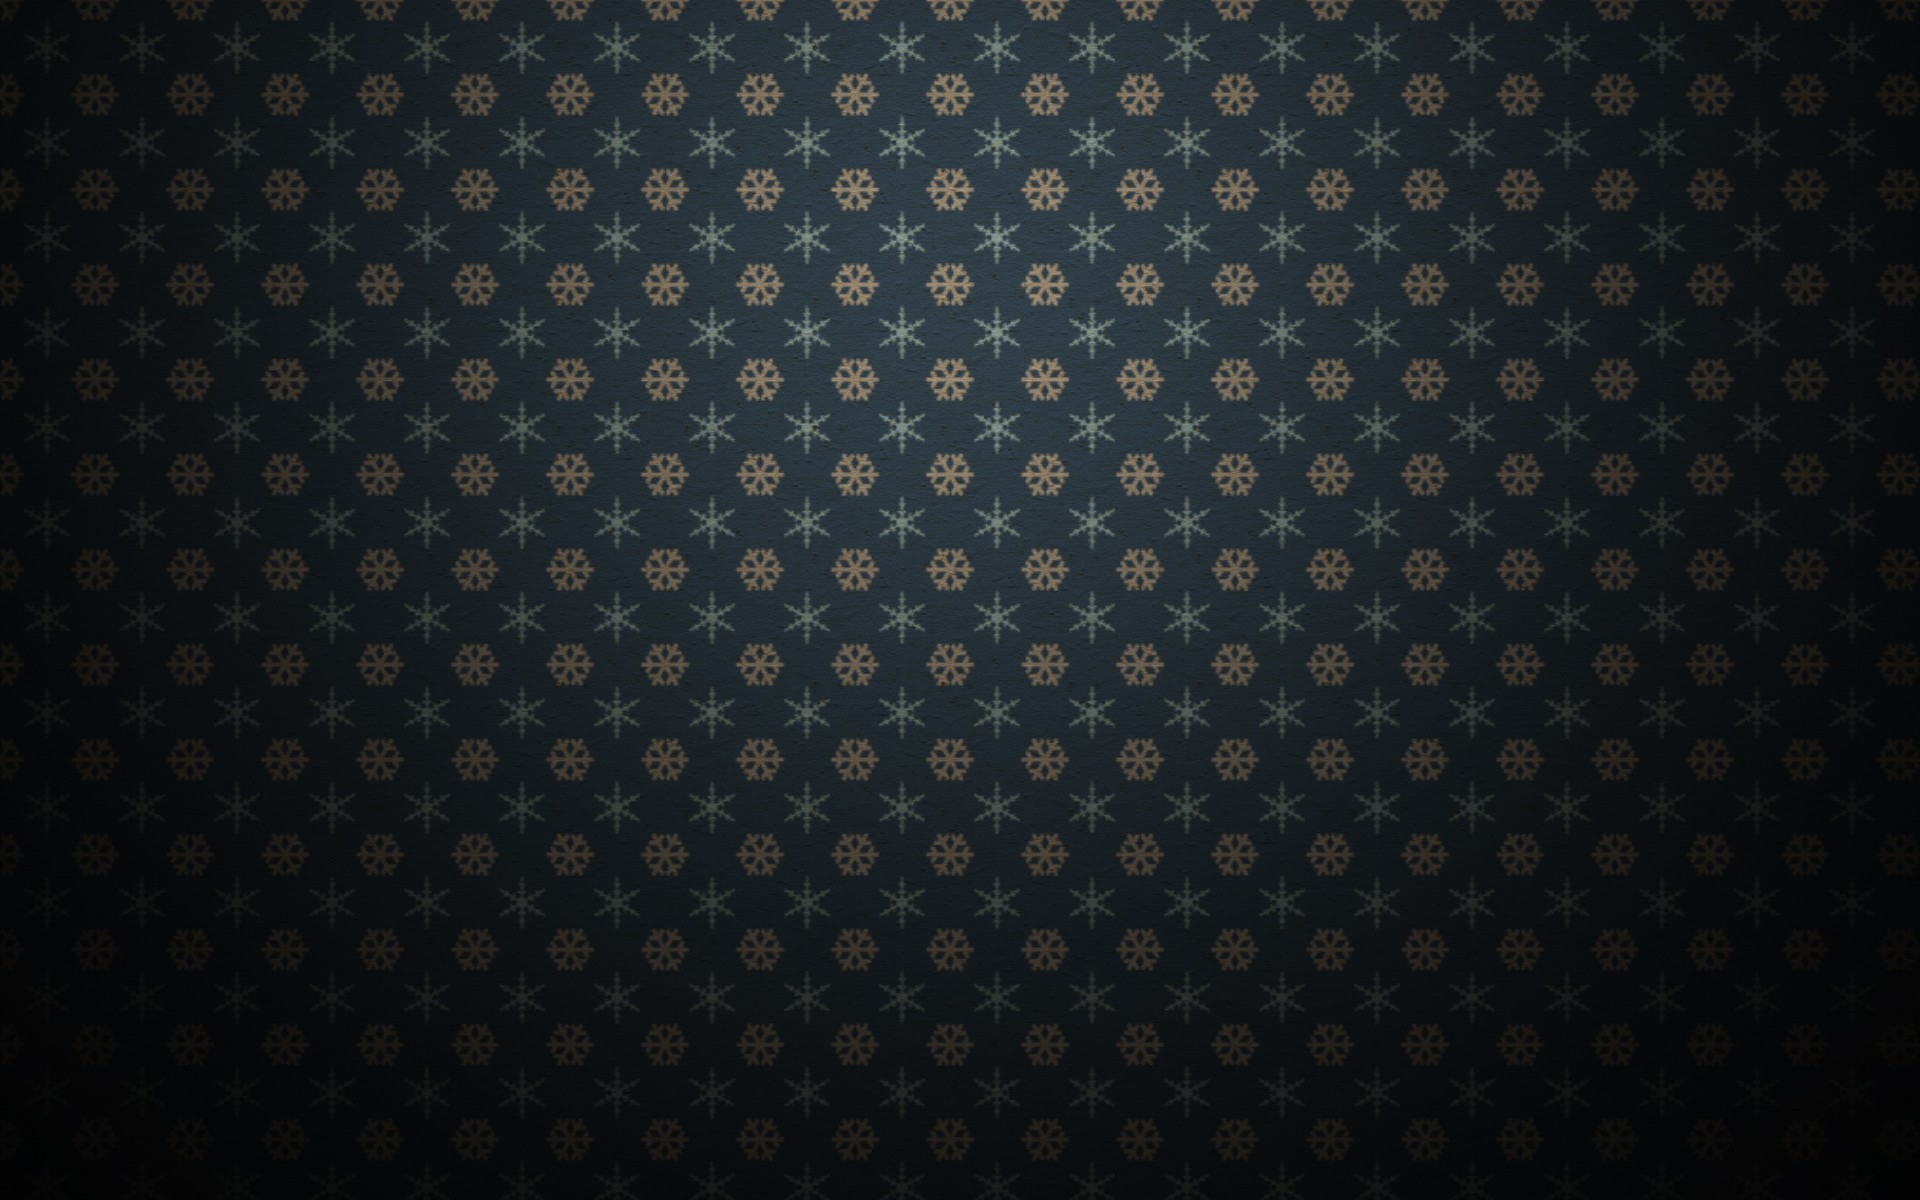 General 1920x1200 pattern texture dark simple background snowflakes digital art